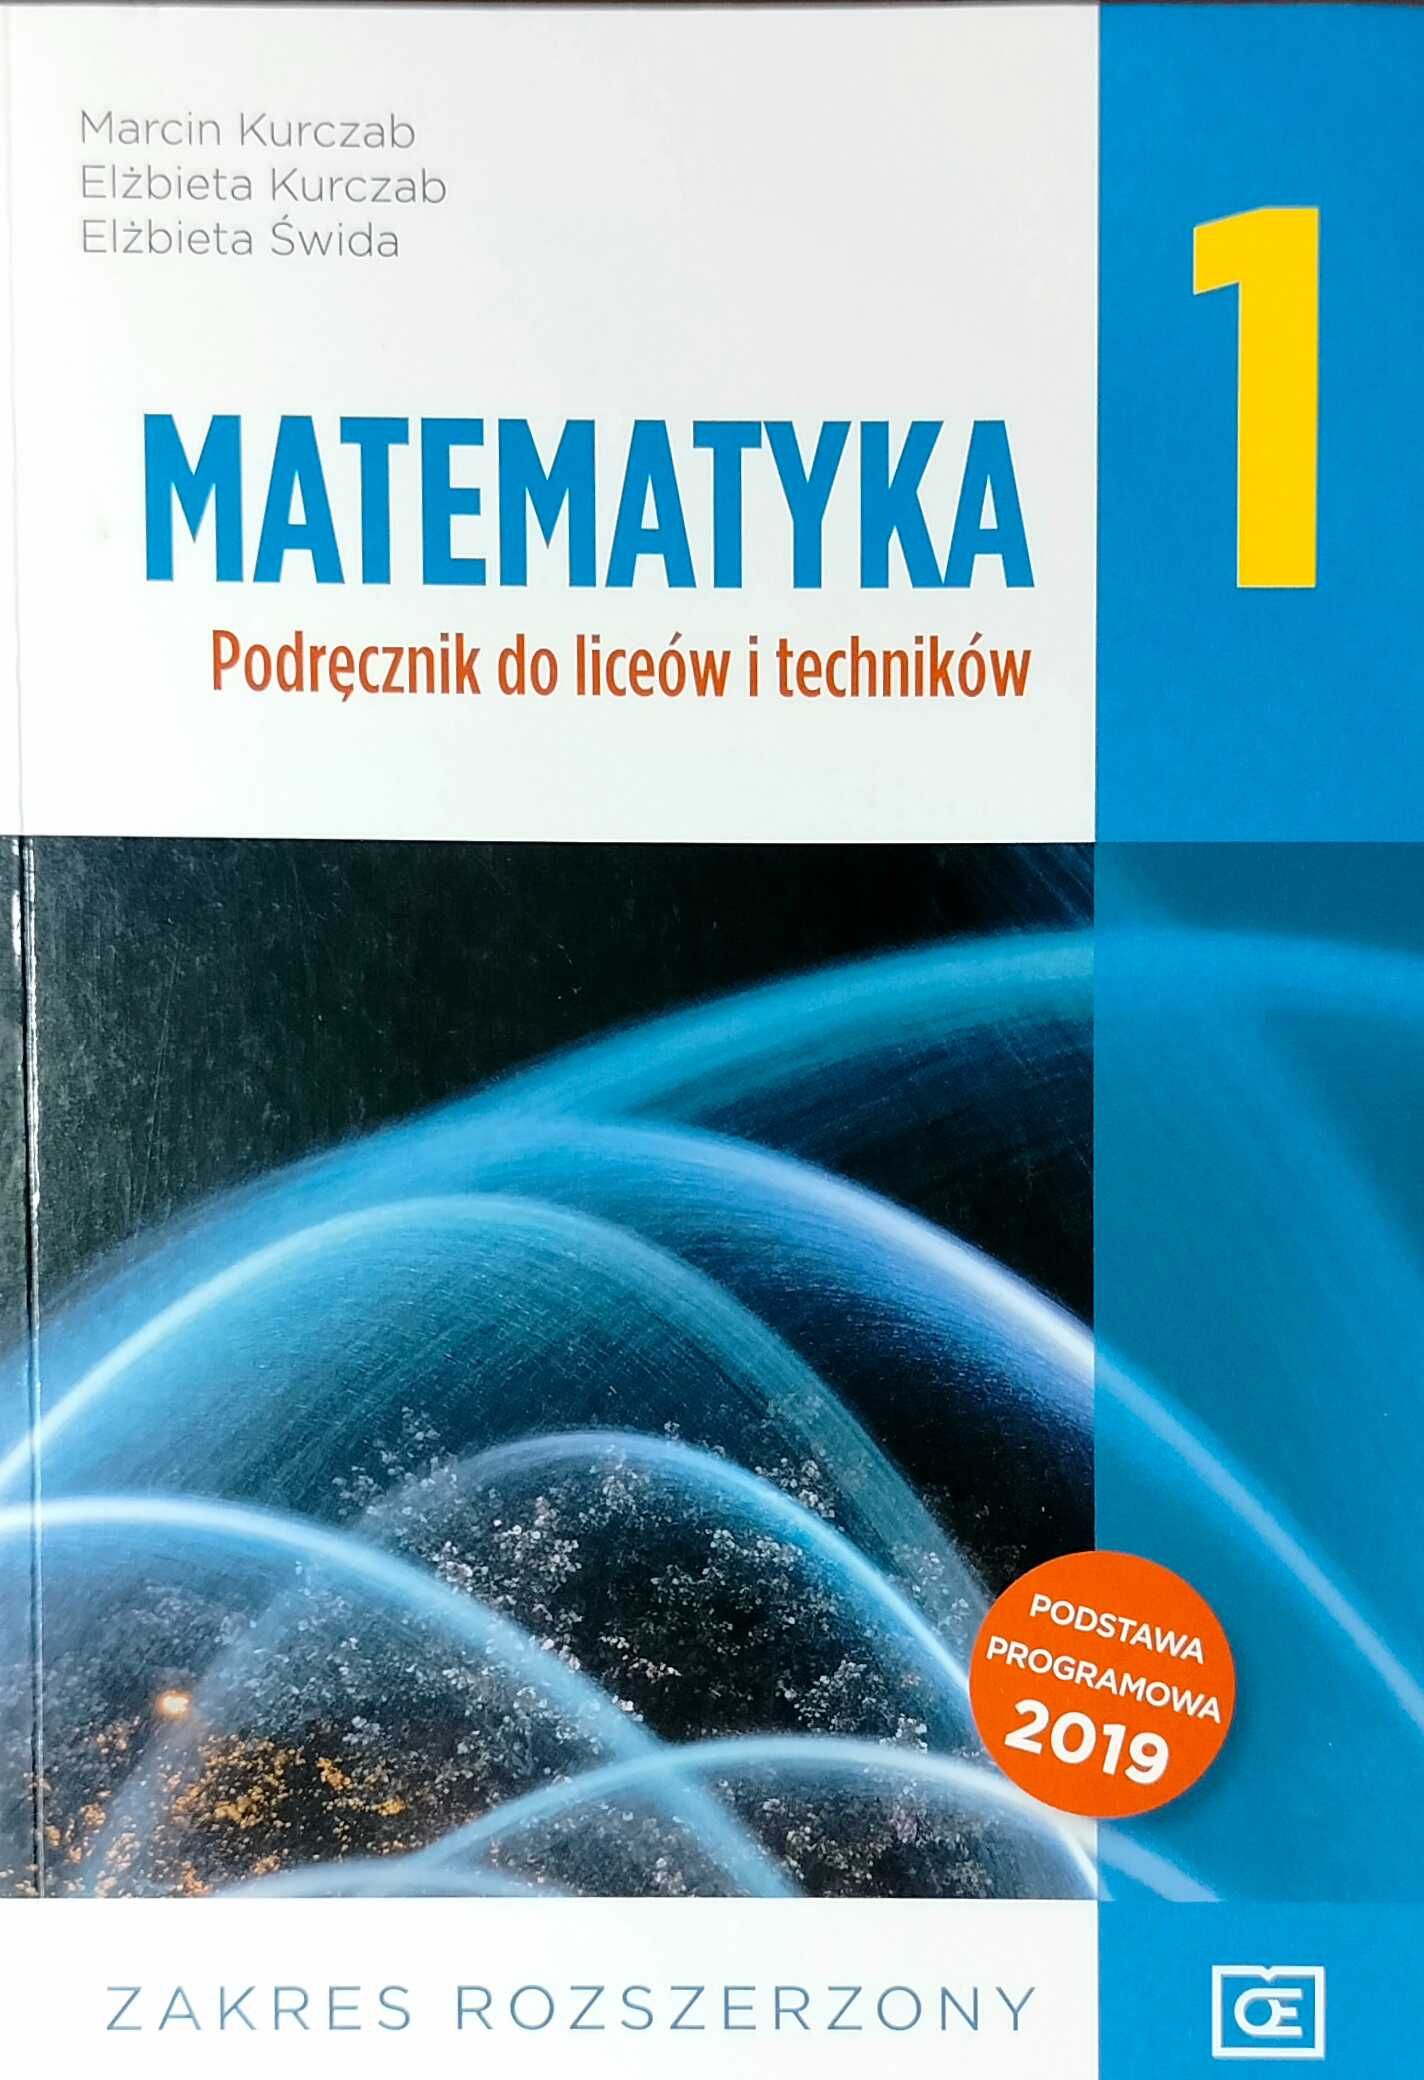 Matematyka 1 podręcznik do liceów i techników zakres rozszerzony